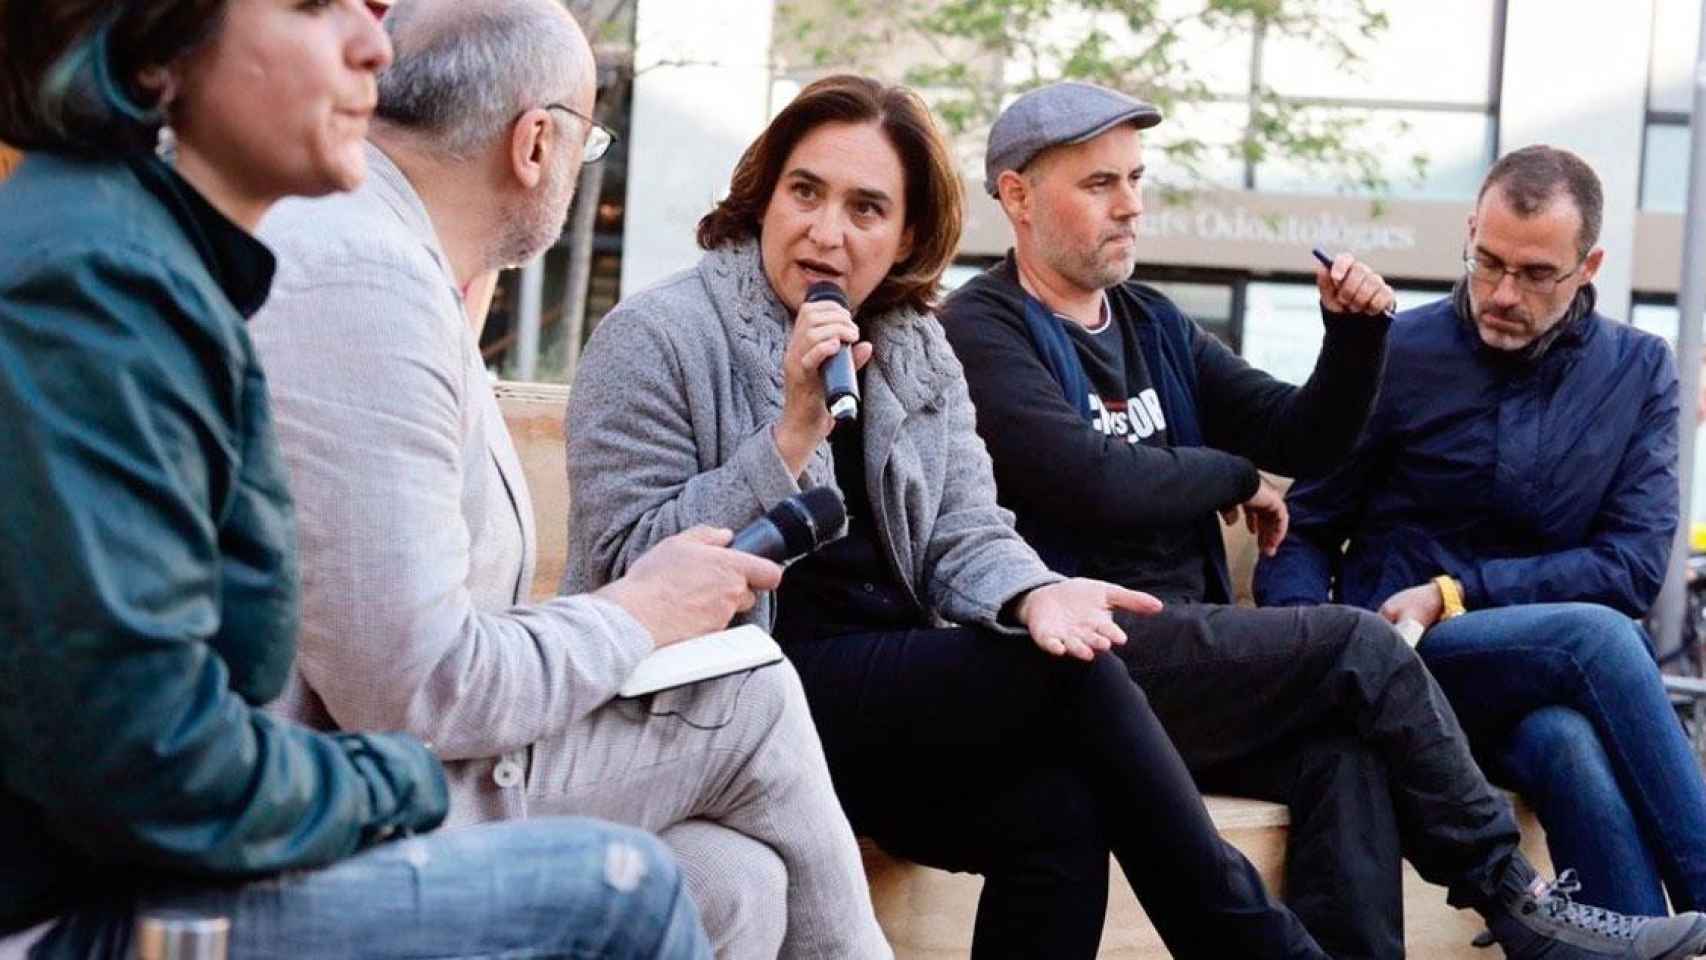 Ada Colau, alcaldesa de Barcelona, con el micrófono, y Eloi Badia, a su izquierda, en un acto político / EP